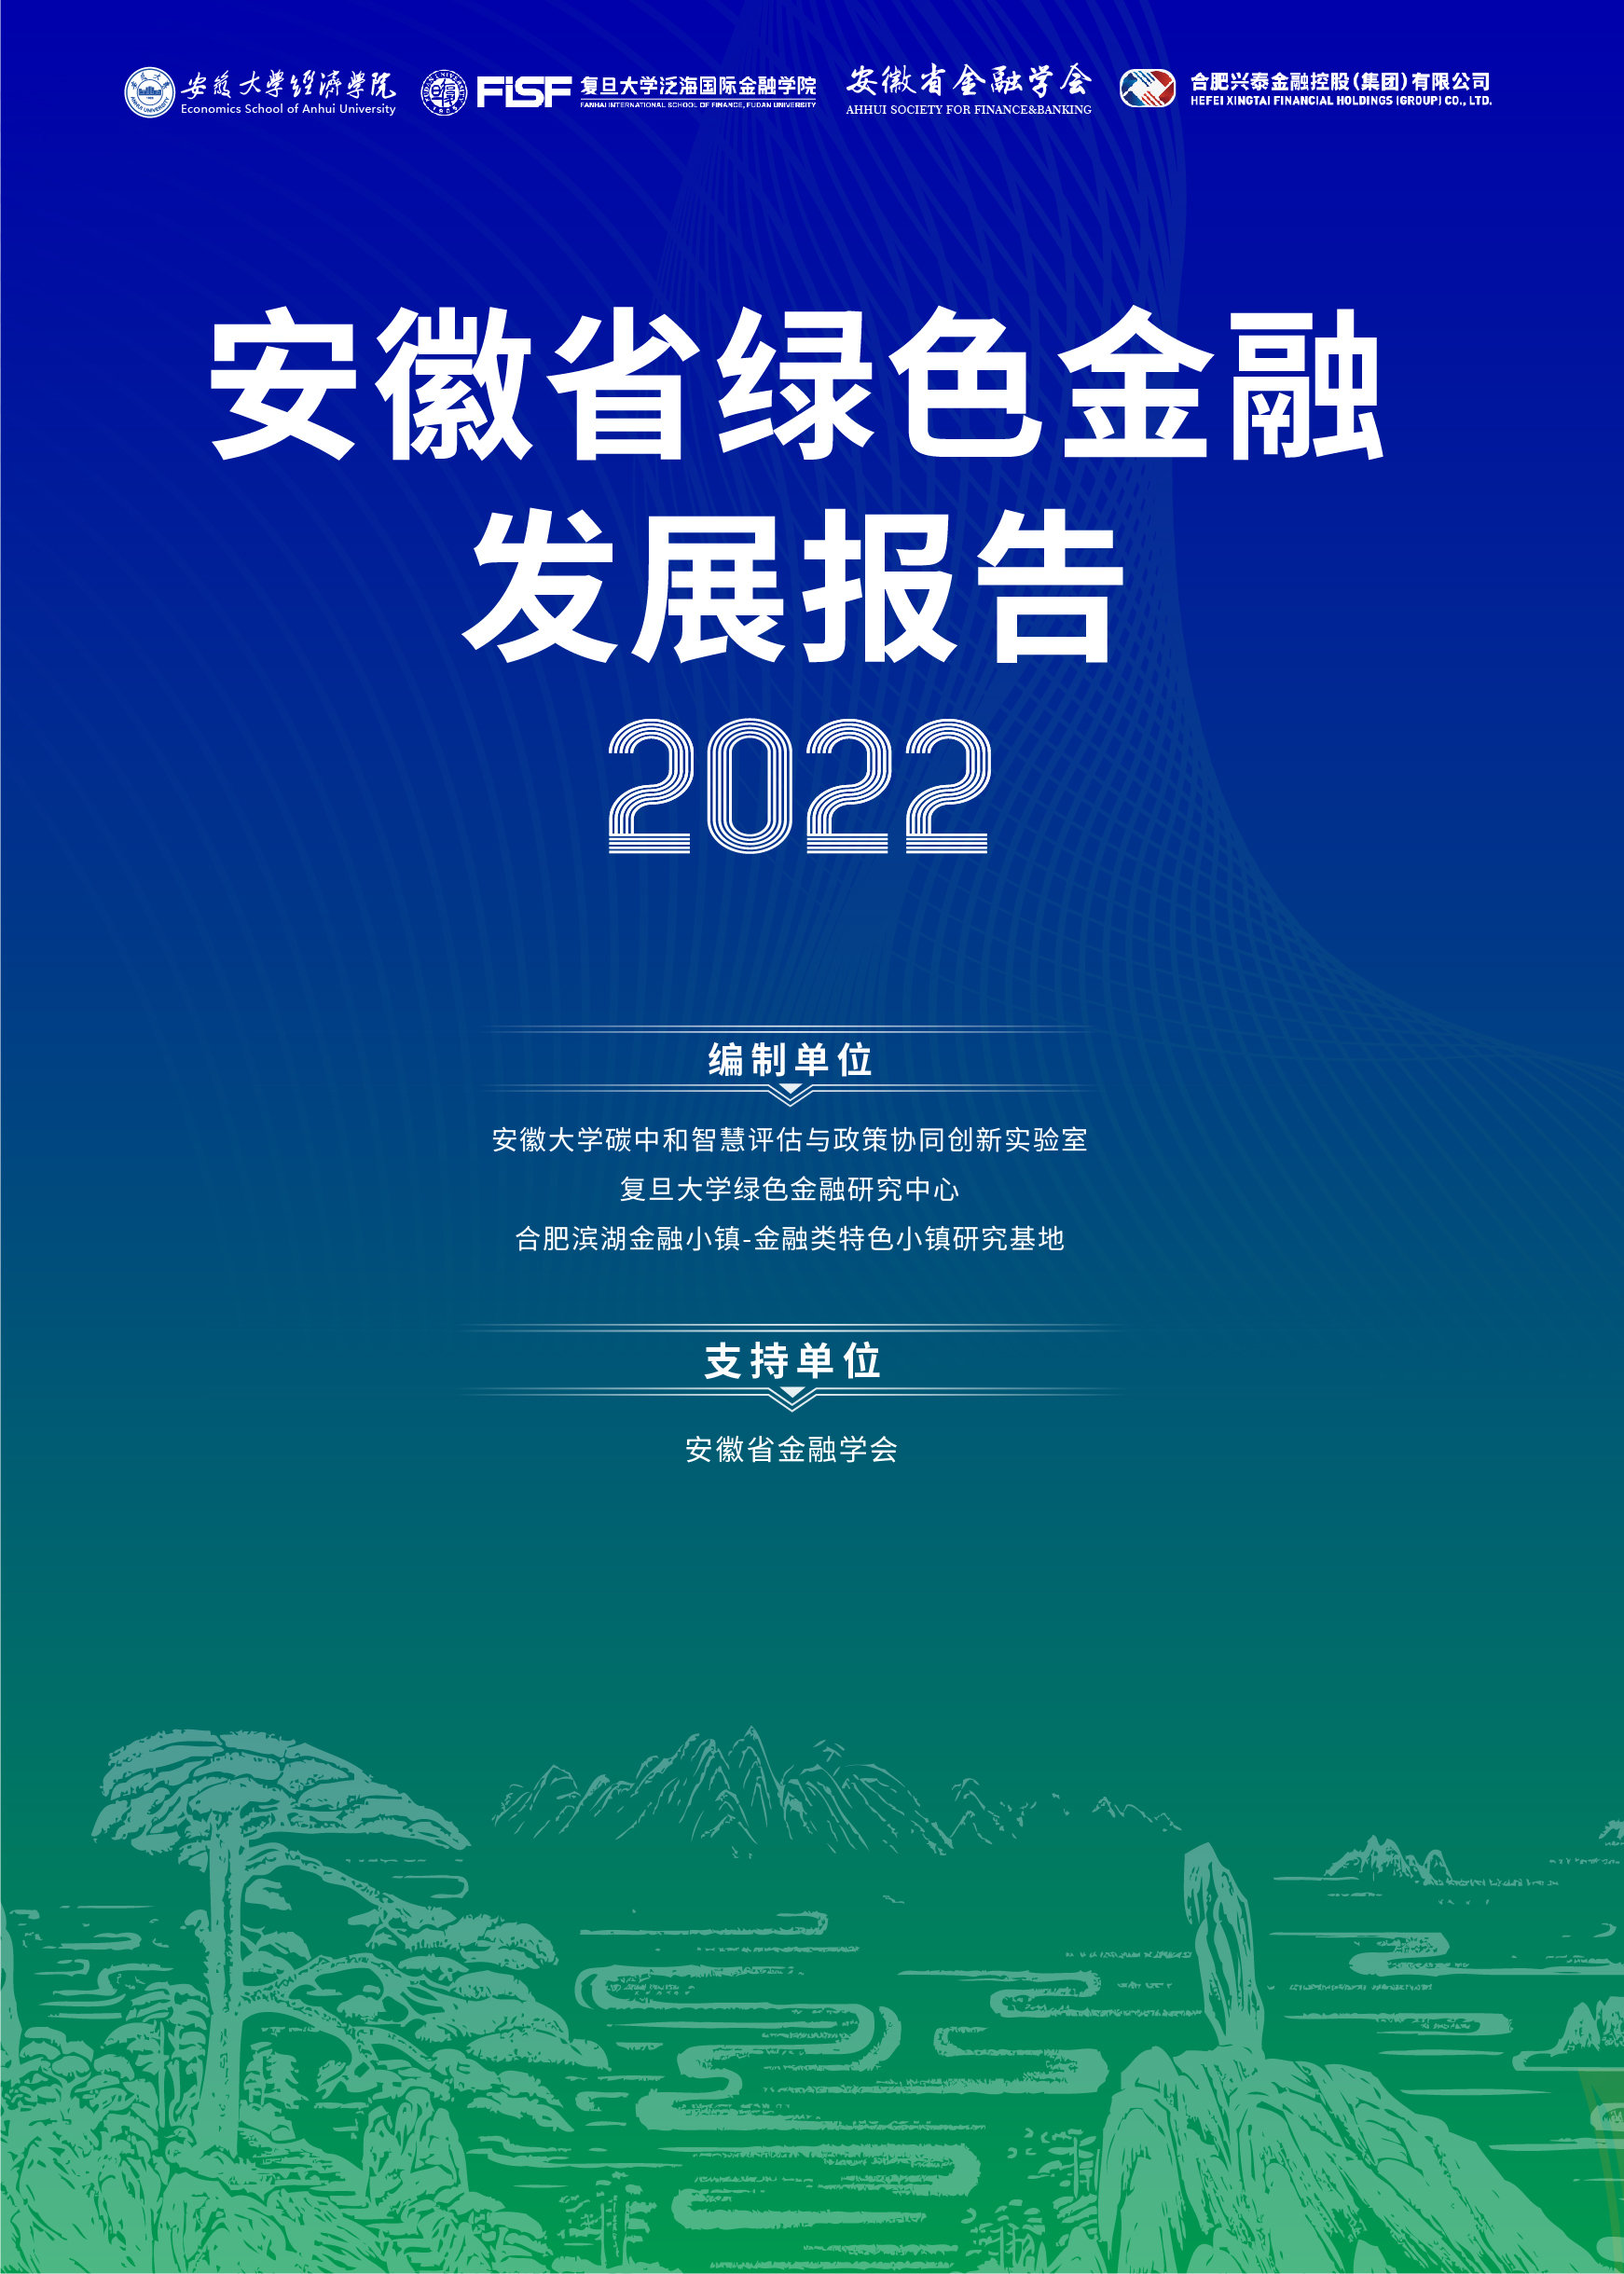 中国高校绿色金融研究联盟2022年会暨长三角绿色金融发展峰会在合肥圆满落幕